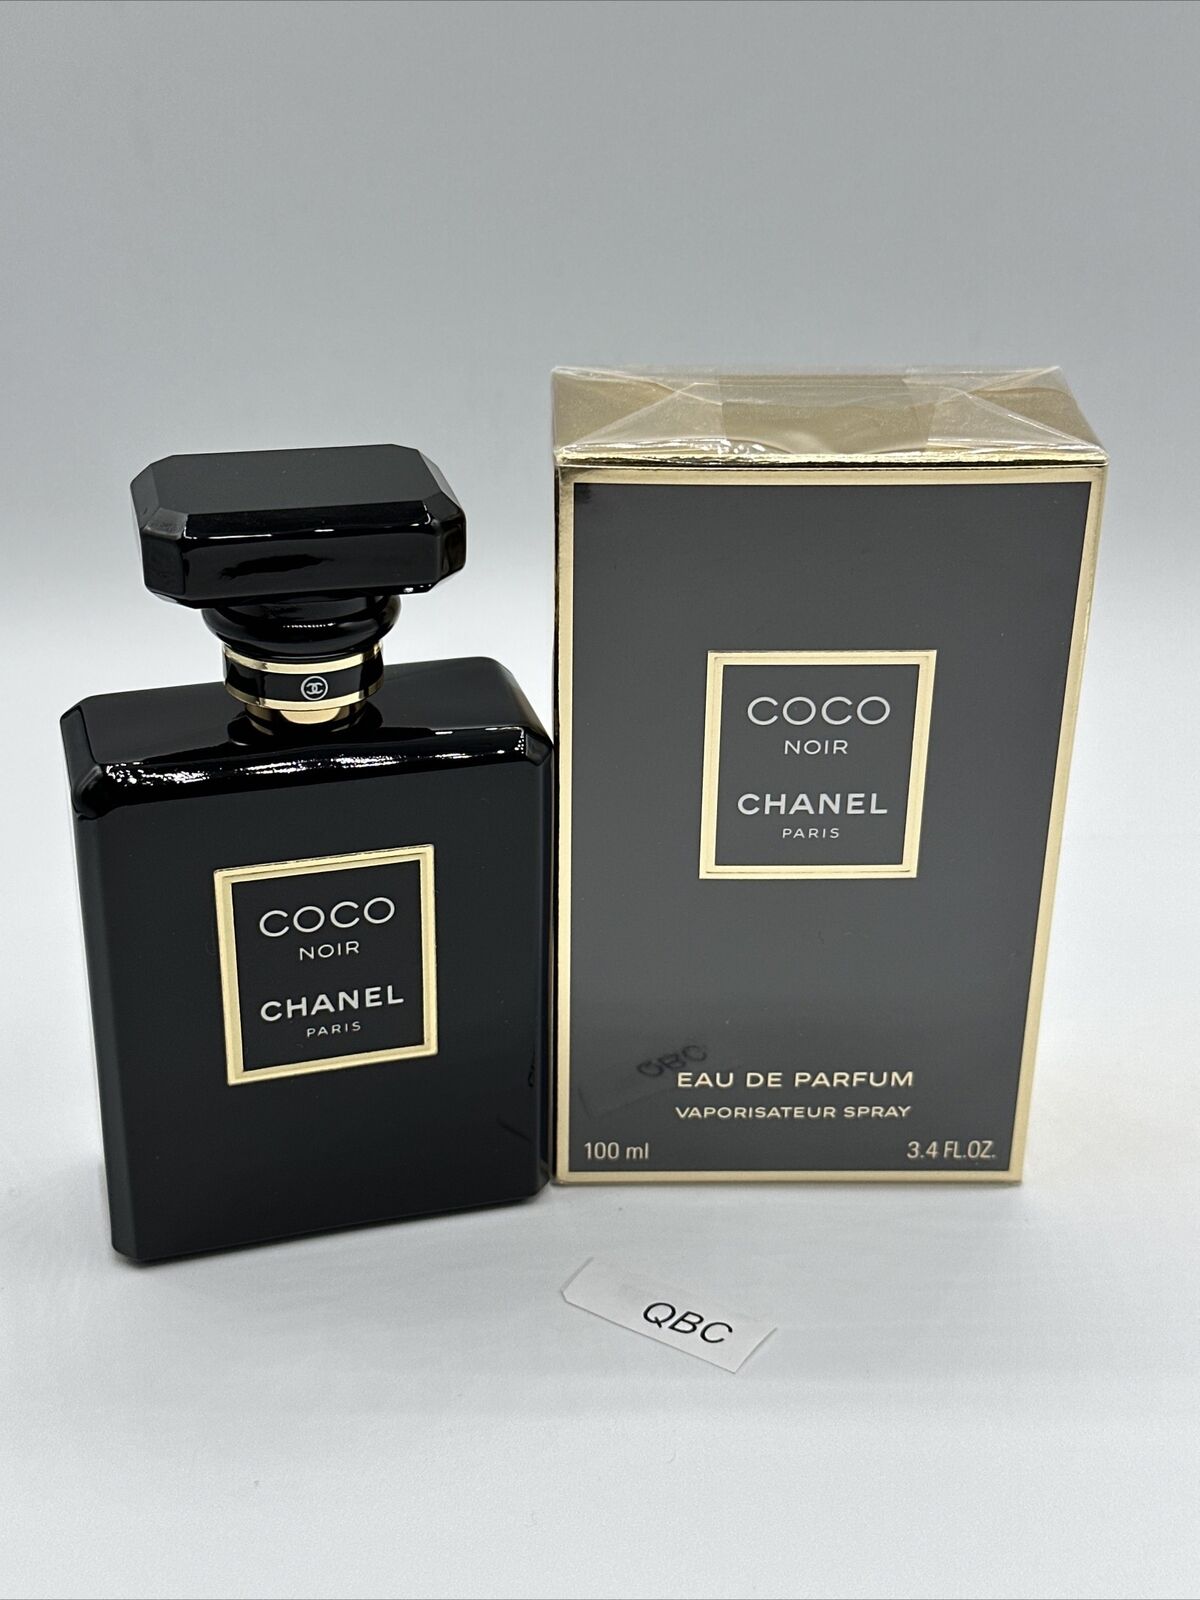 CHANEL Coco Noir 100ml Women's Eau de Parfum Spray for sale online